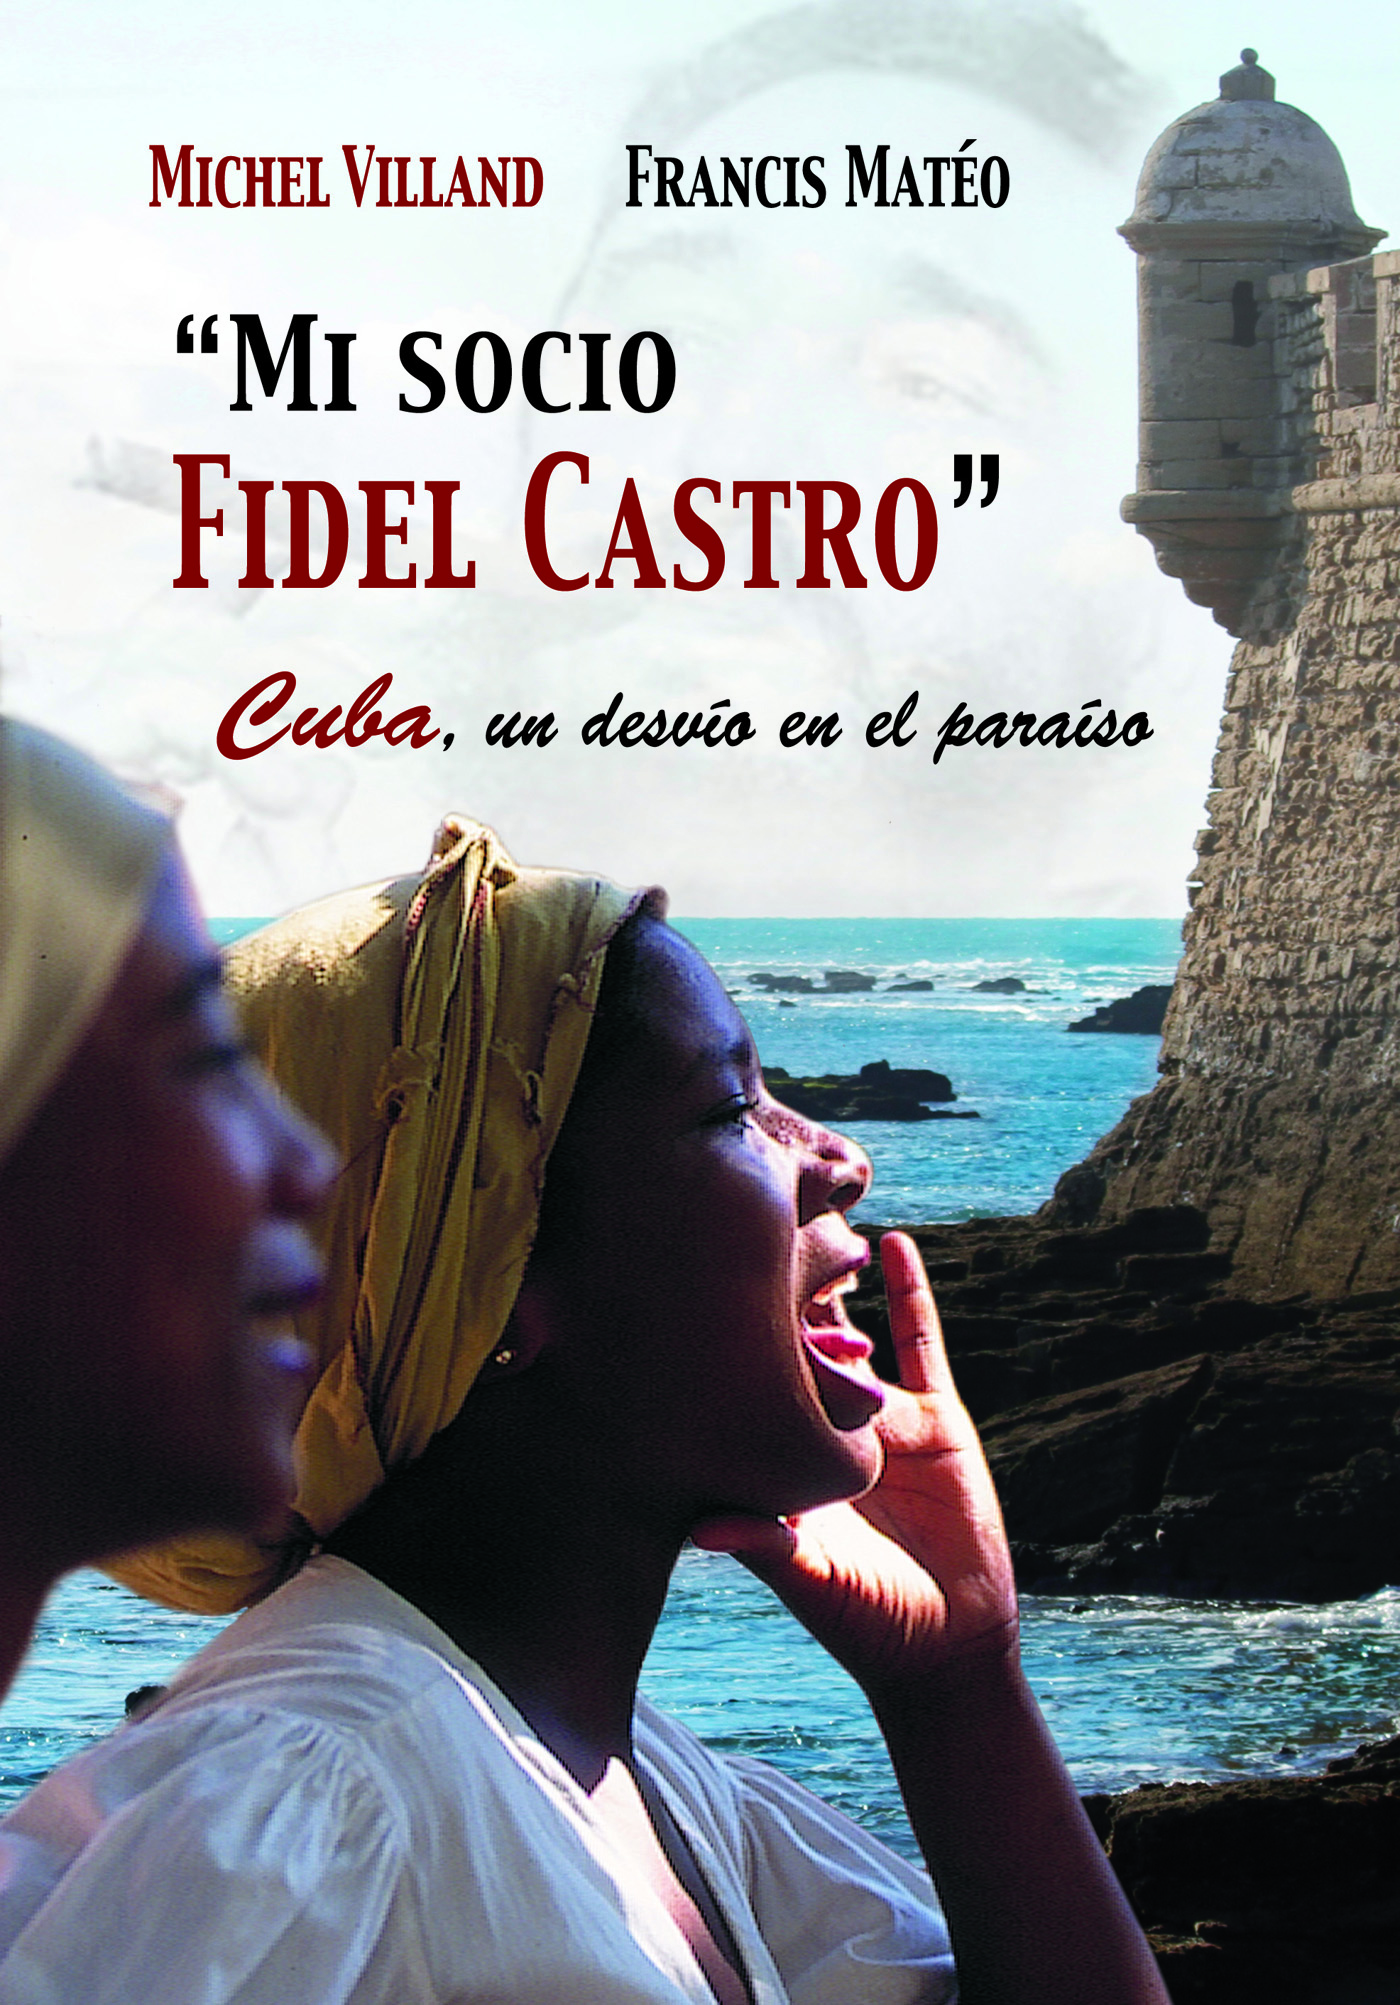 MI SOCIO FIDEL CASTRO
Cuba, un desvío en el paraíso